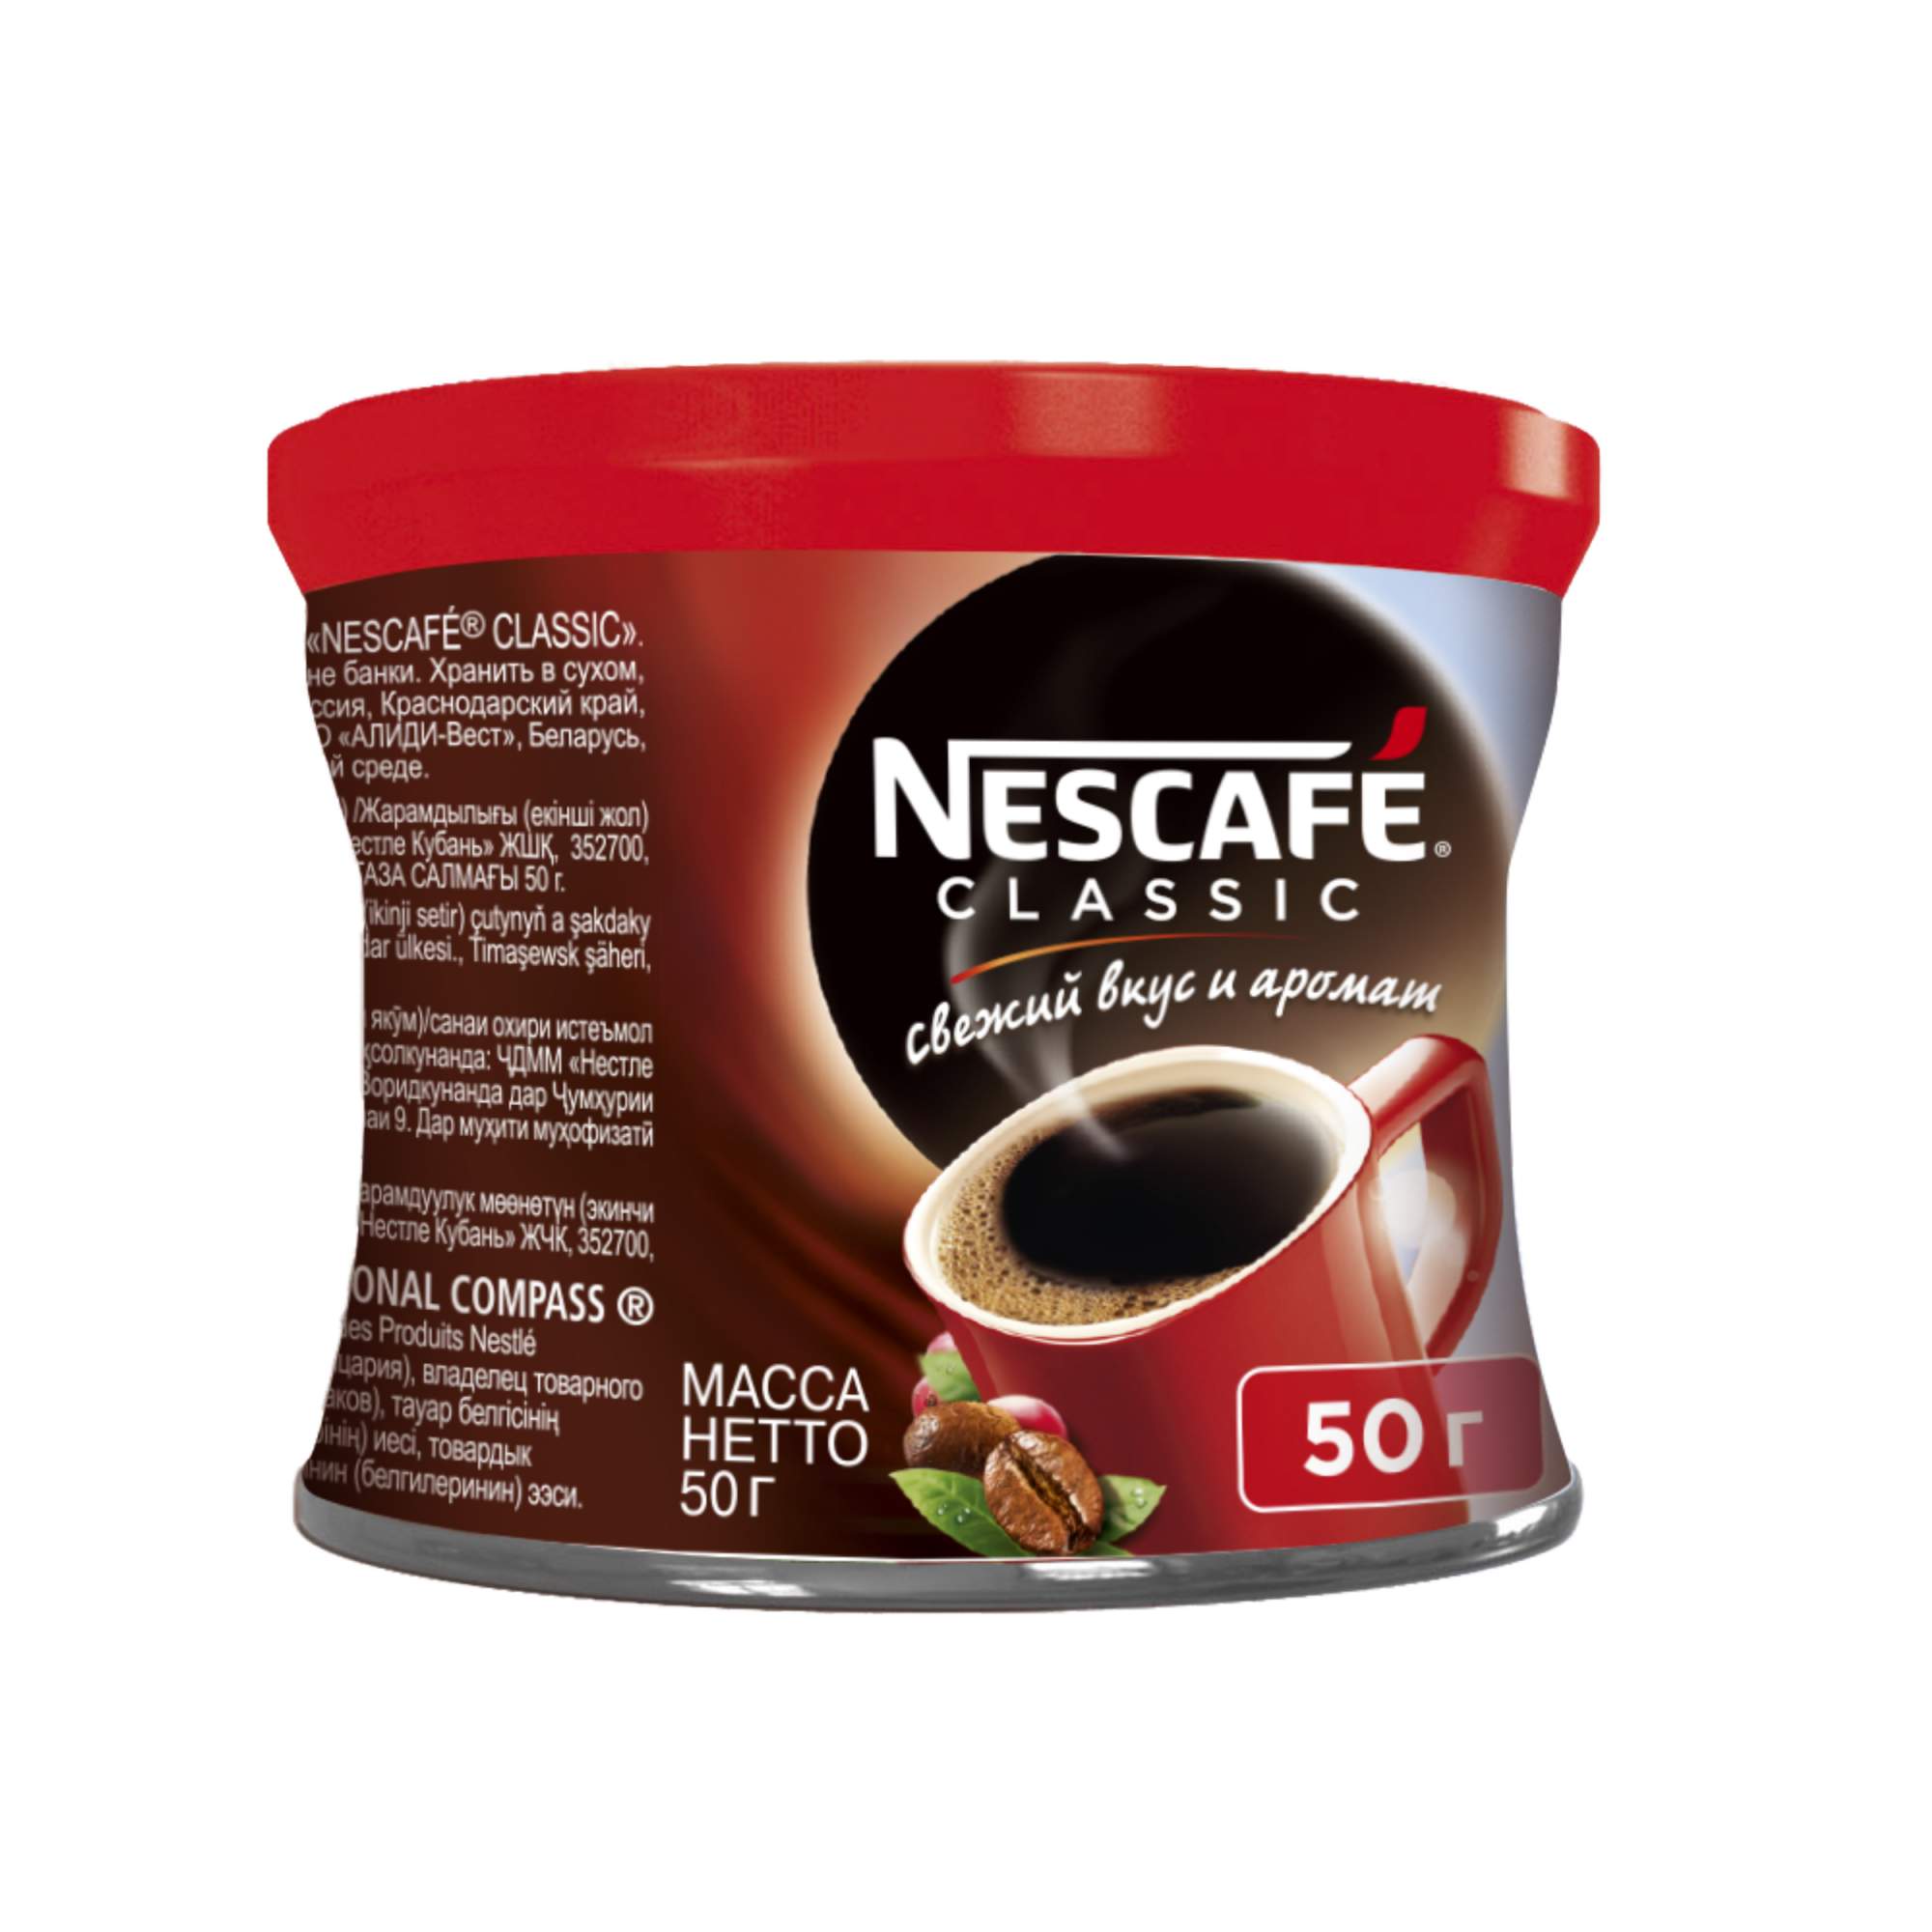 Мелющий кофе нескафе. Кофе растворимый "Nescafe Classic crema" (120 гр). Кофе Нескафе Классик 50г. Кофе Nescafe Classic ж/б 230г*6. Кофе Нескафе Классик 85г ж/б.